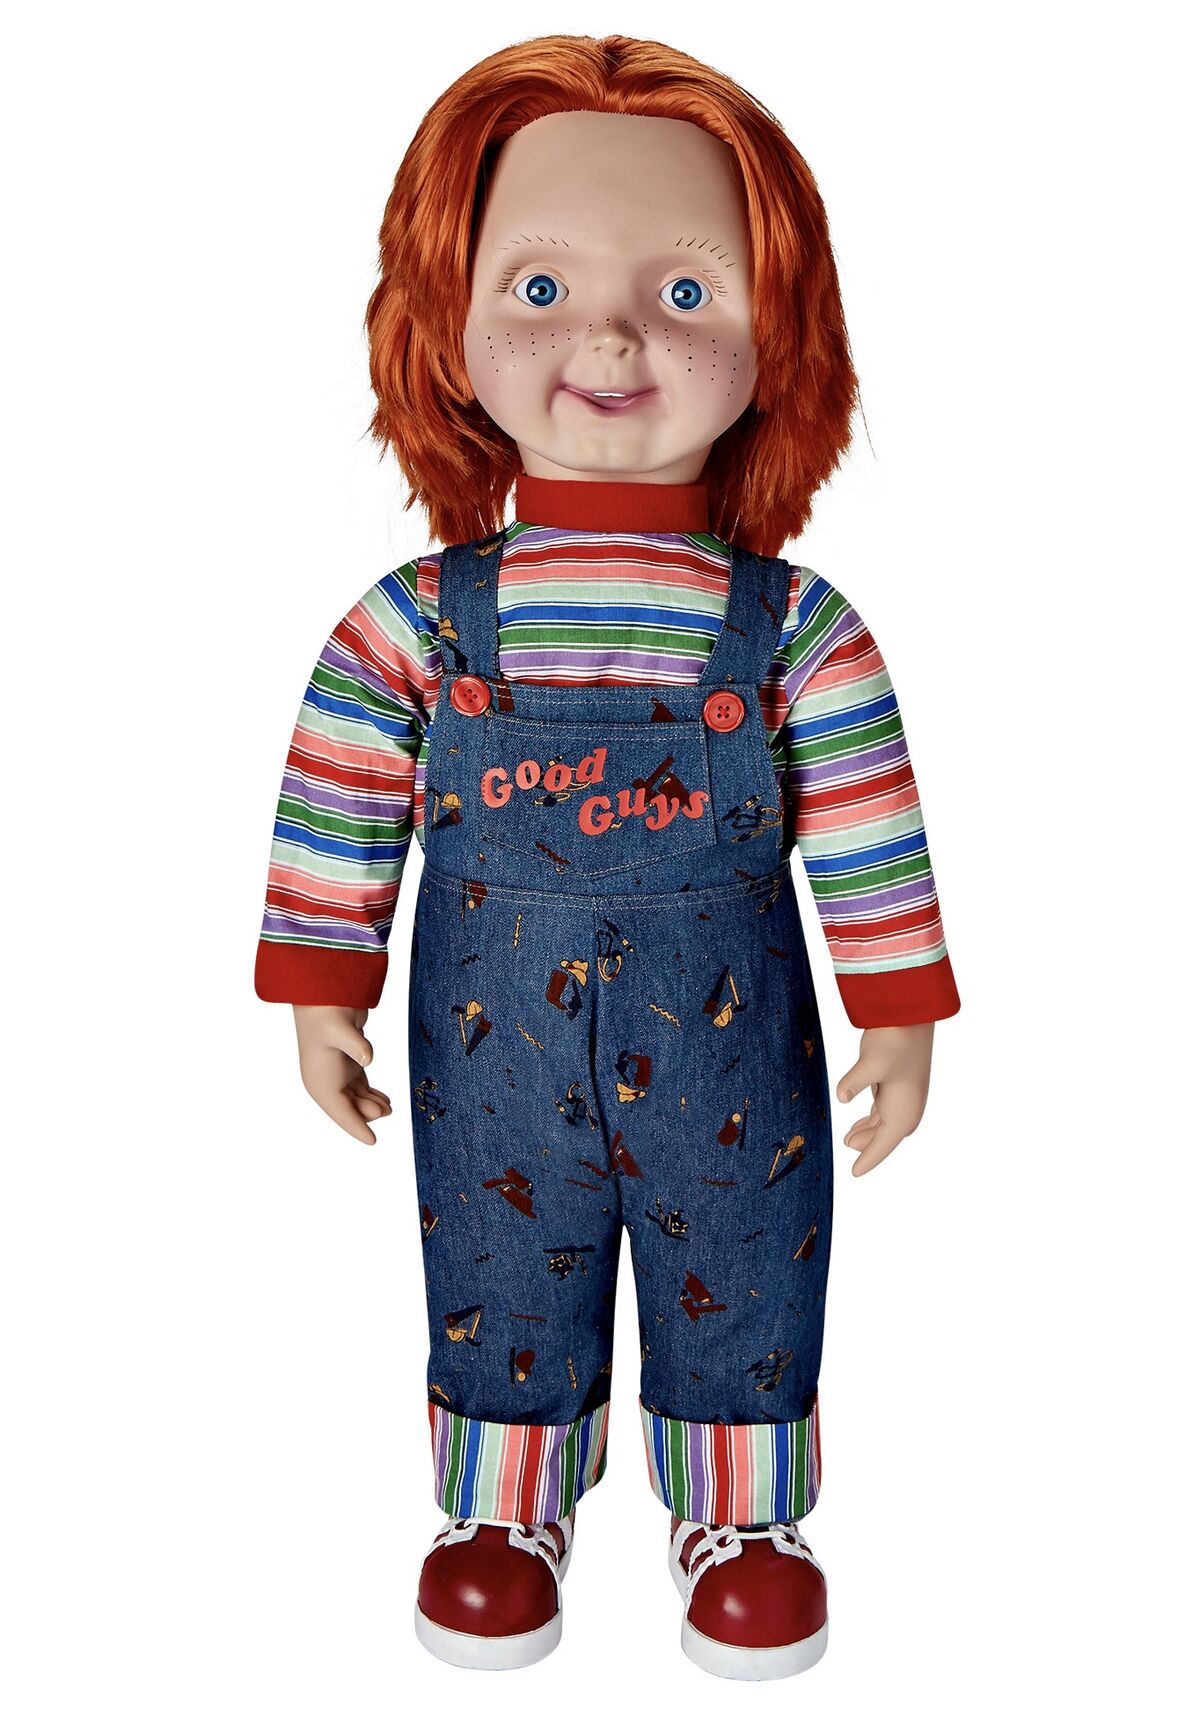 Good Guys Chucky Doll - Child's Play 2